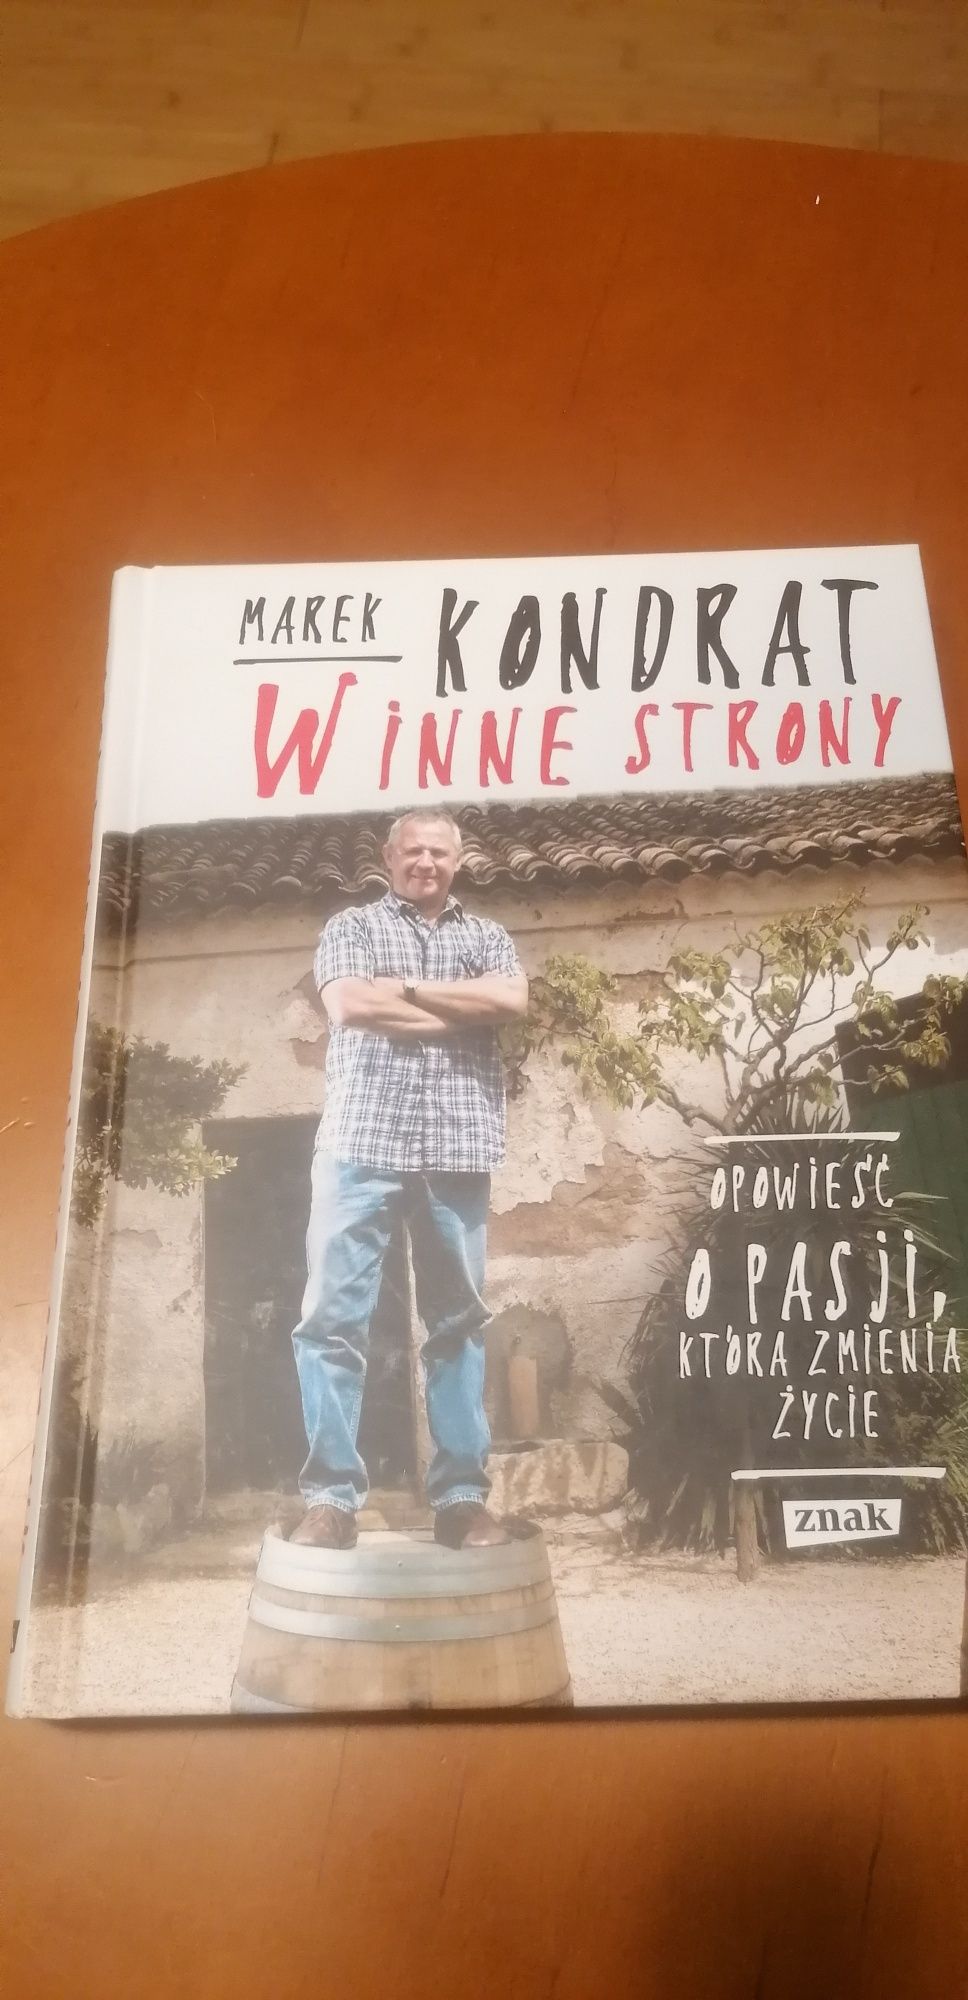 Marek Kondrat "Winne strony"